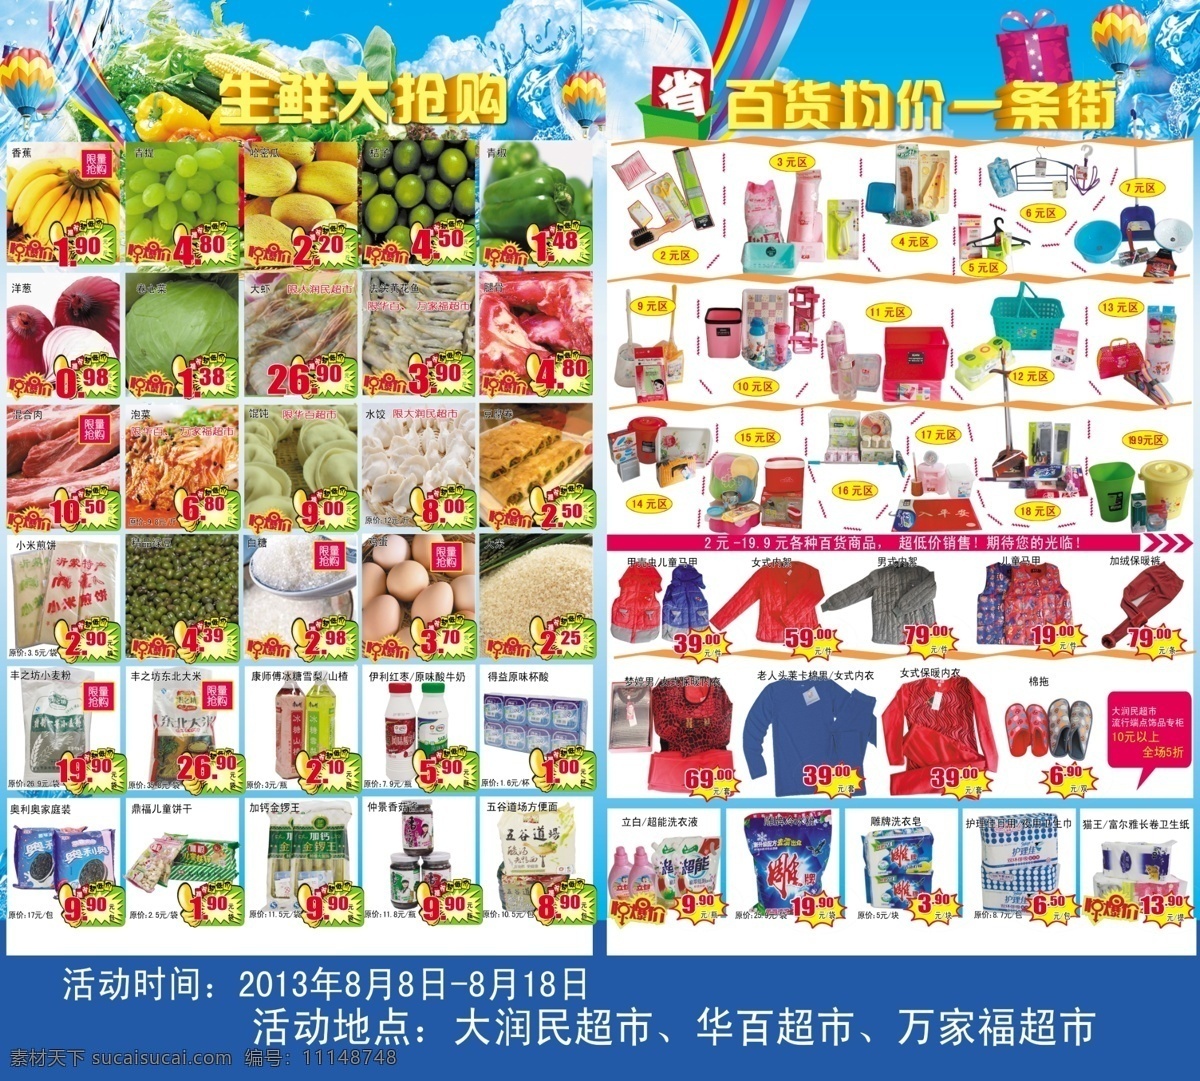 超市促销海报 水 气球 彩虹 生鲜大抢购 百货 均价 一条街 广告设计模板 源文件